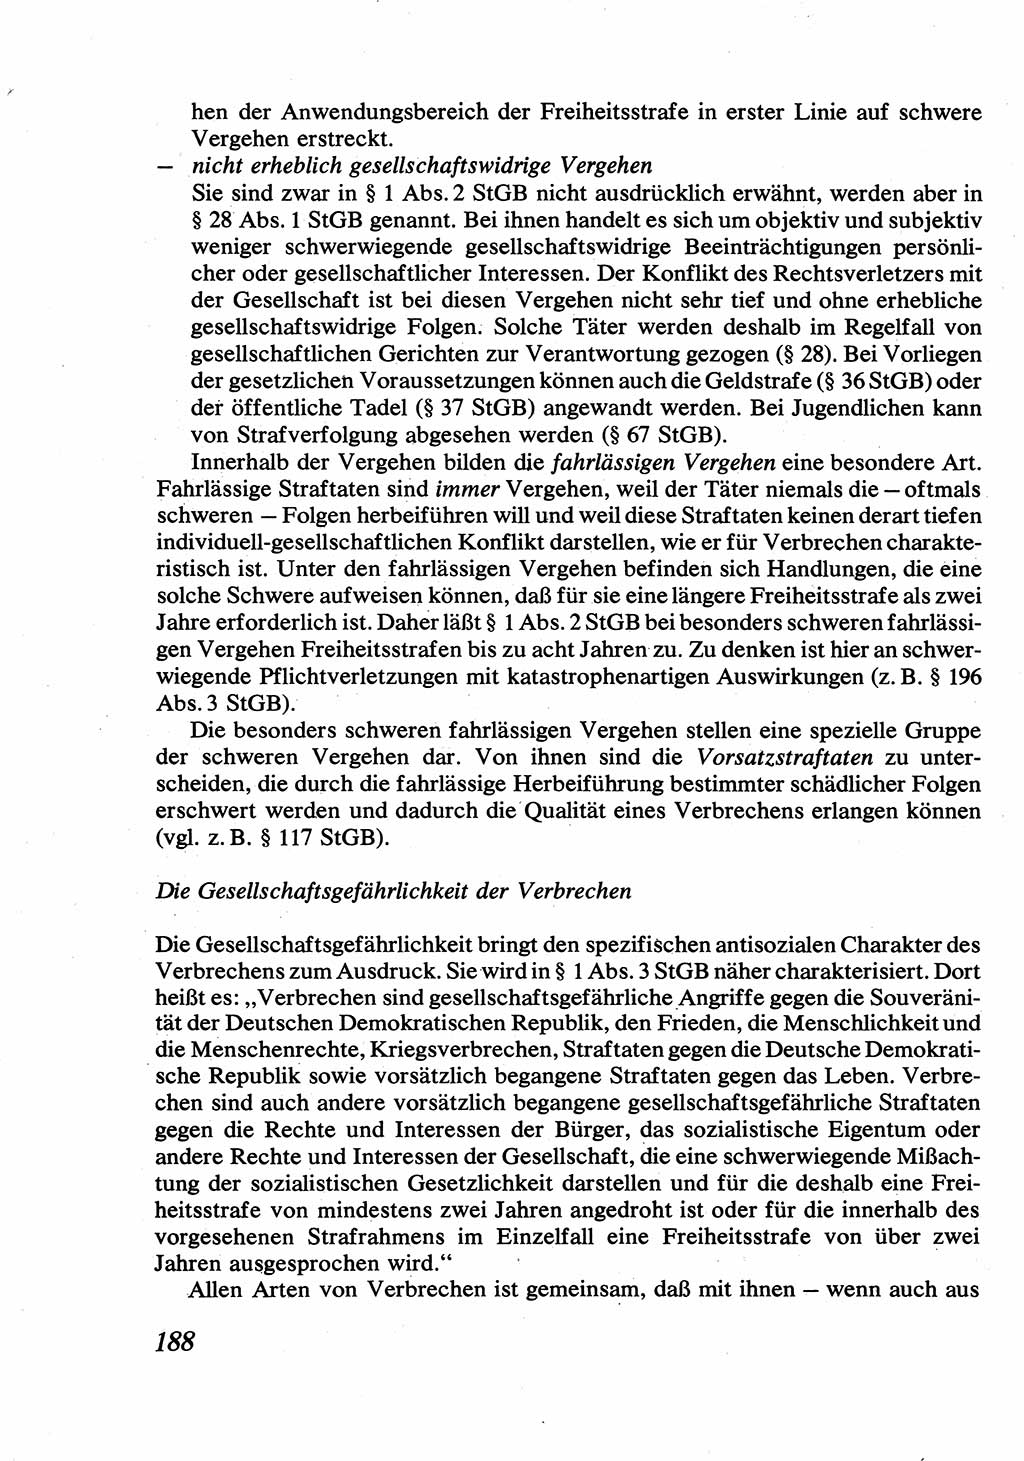 Strafrecht [Deutsche Demokratische Republik (DDR)], Allgemeiner Teil, Lehrbuch 1976, Seite 188 (Strafr. DDR AT Lb. 1976, S. 188)